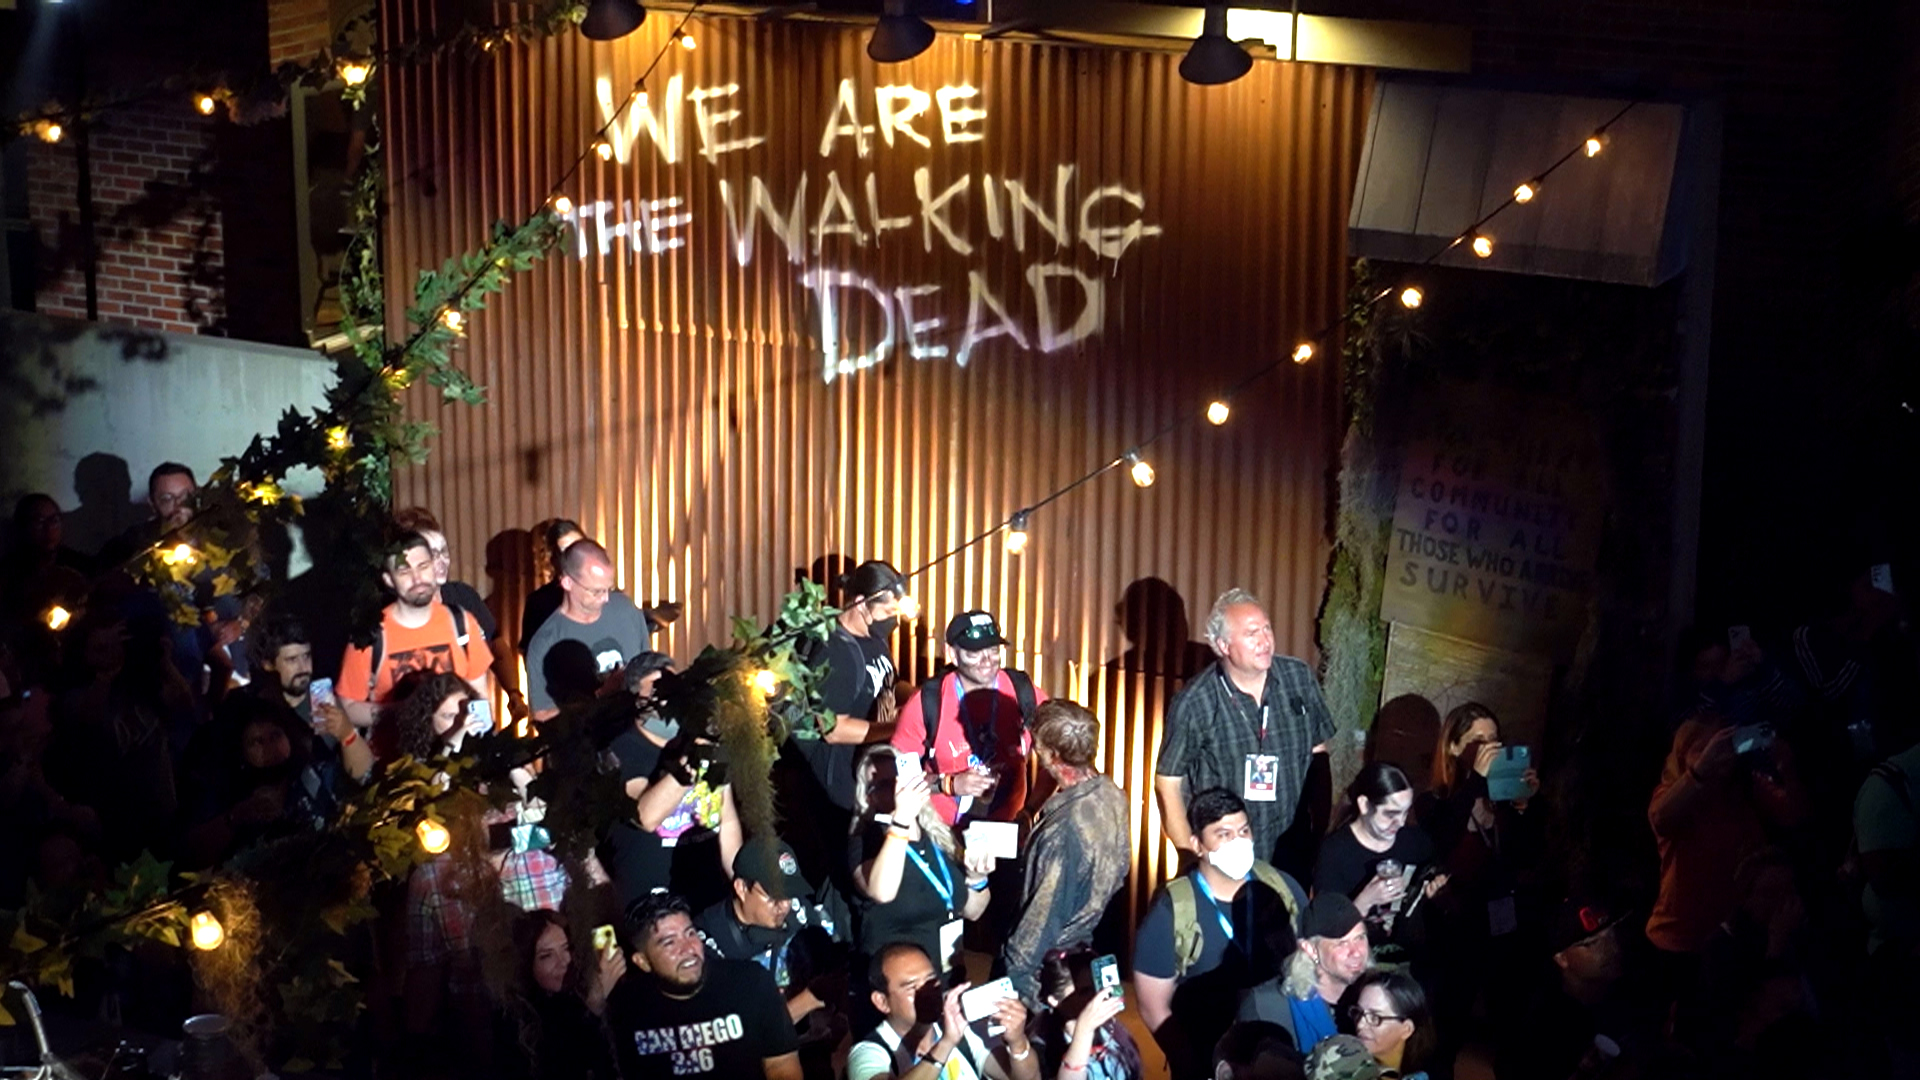 Watch Generation Dead: The Walking Dead Fan Documentary | The Walking Dead Video Extras